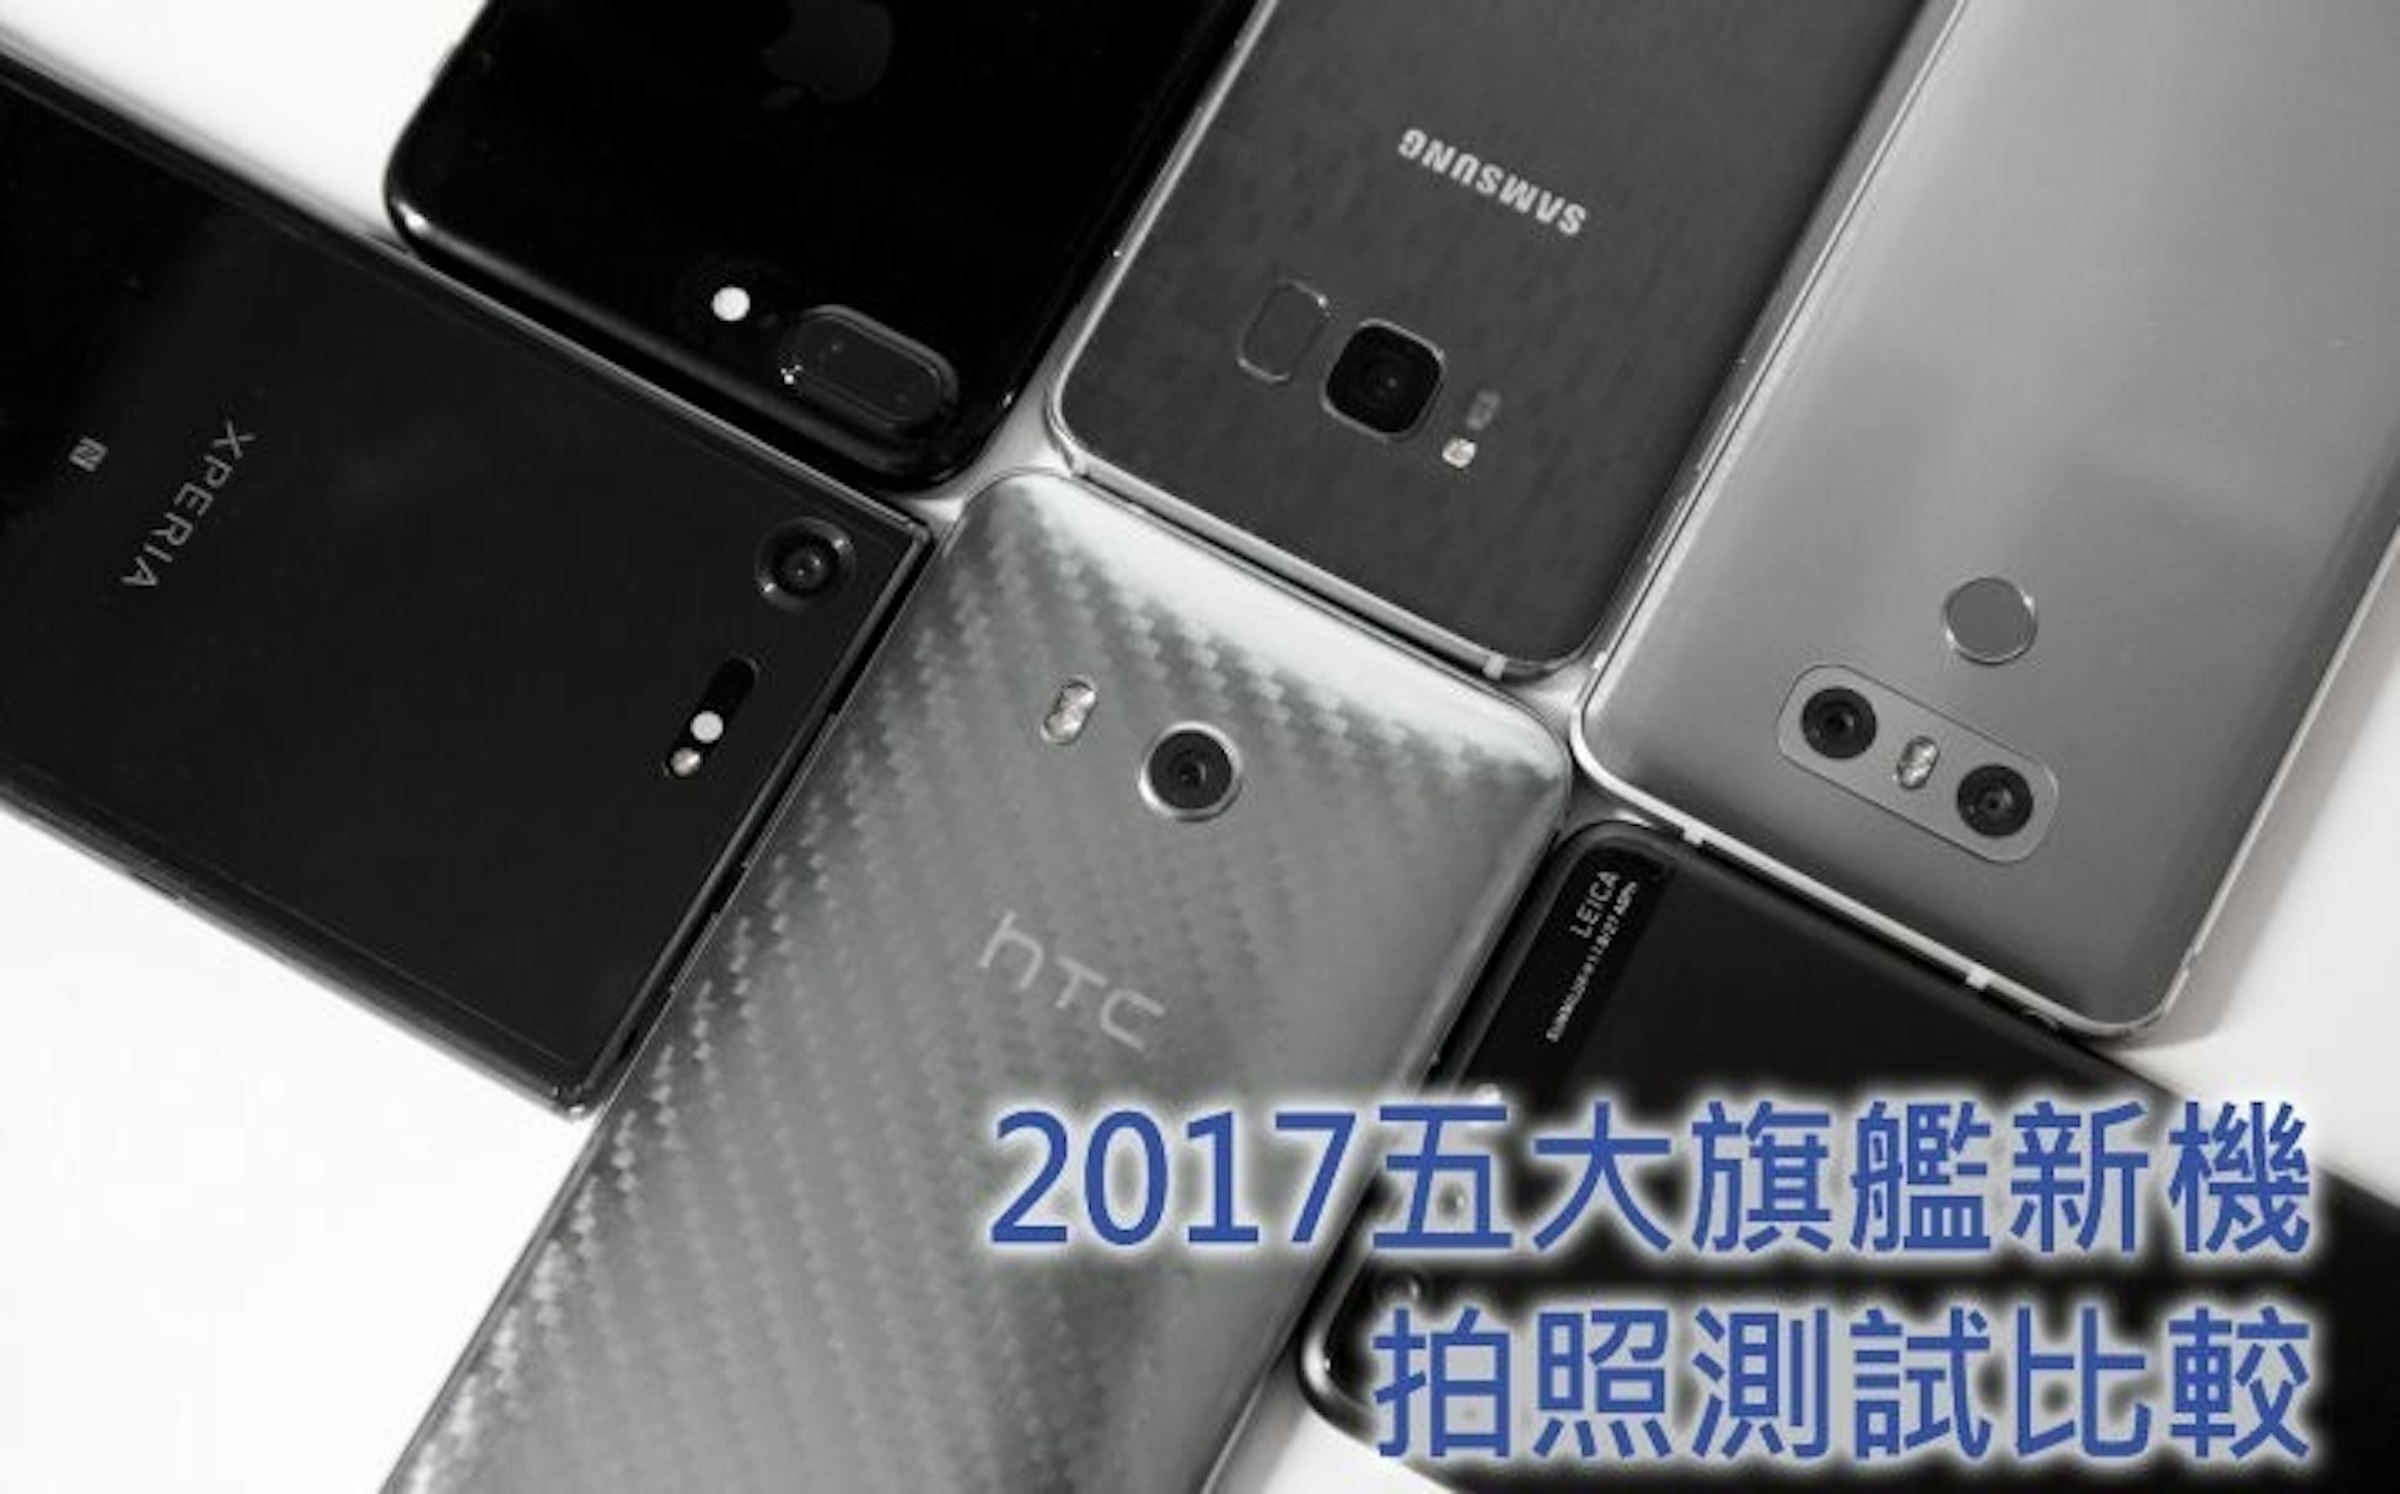 17 旗艦拍照手機是誰 五大旗艦實拍對比 Sony Xperia Xz Premium Htc U11 Samsung Galaxy S8 Huawei P10 Plus Lg G6 癮科技cool3c